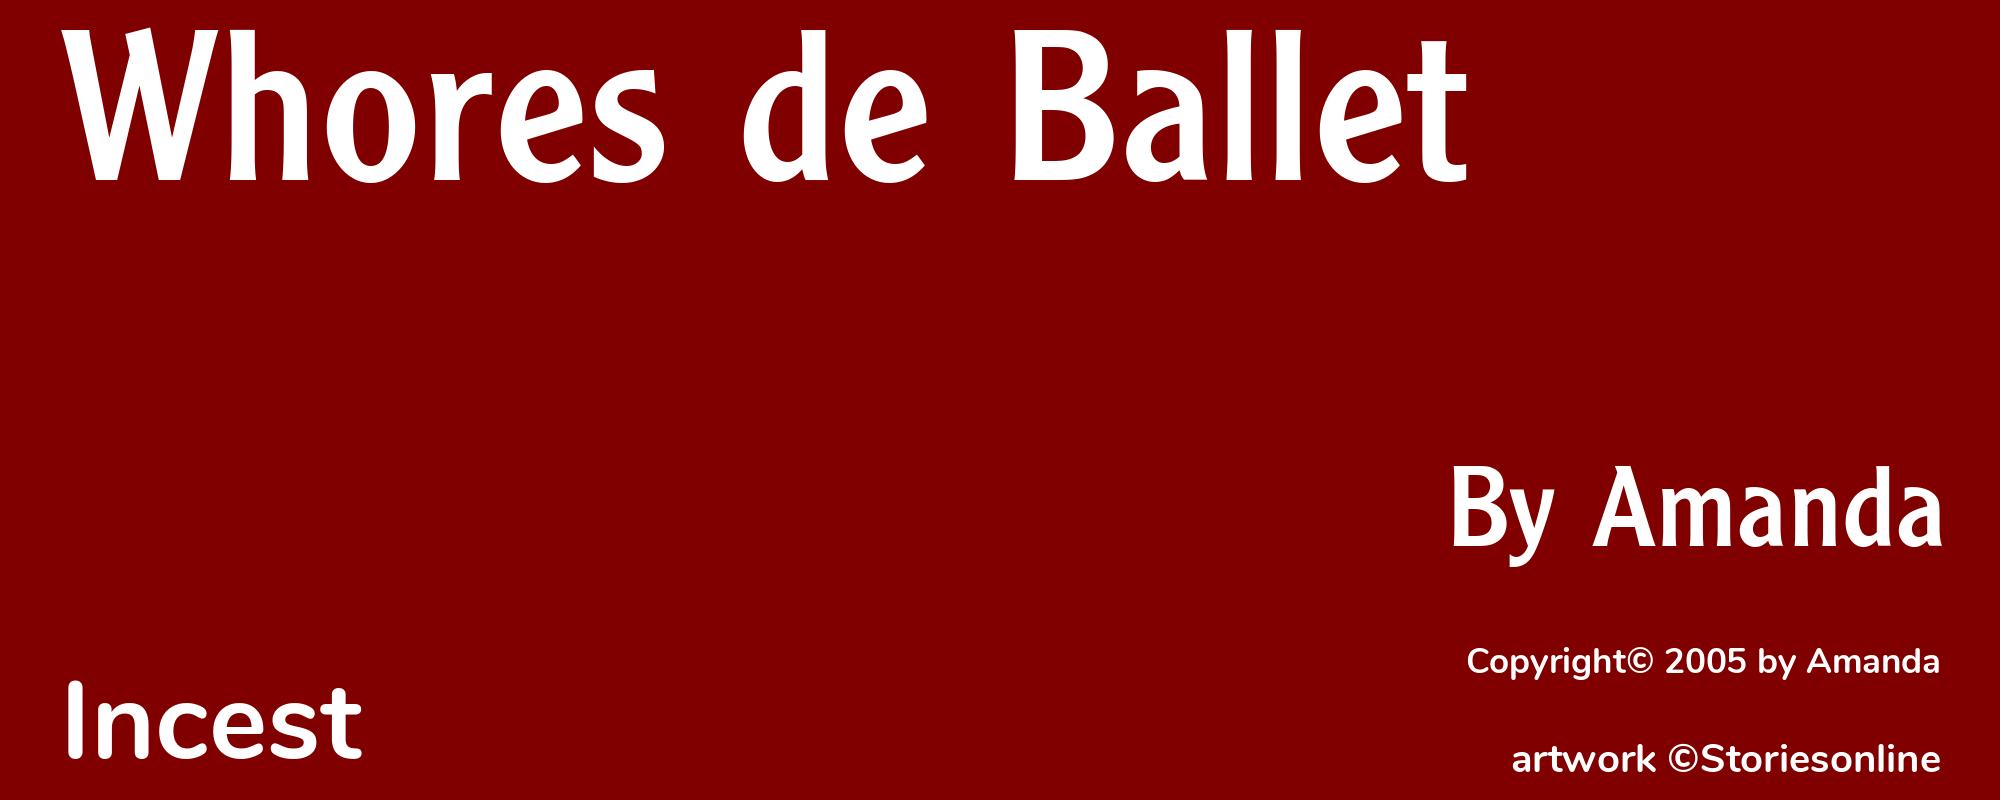 Whores de Ballet - Cover